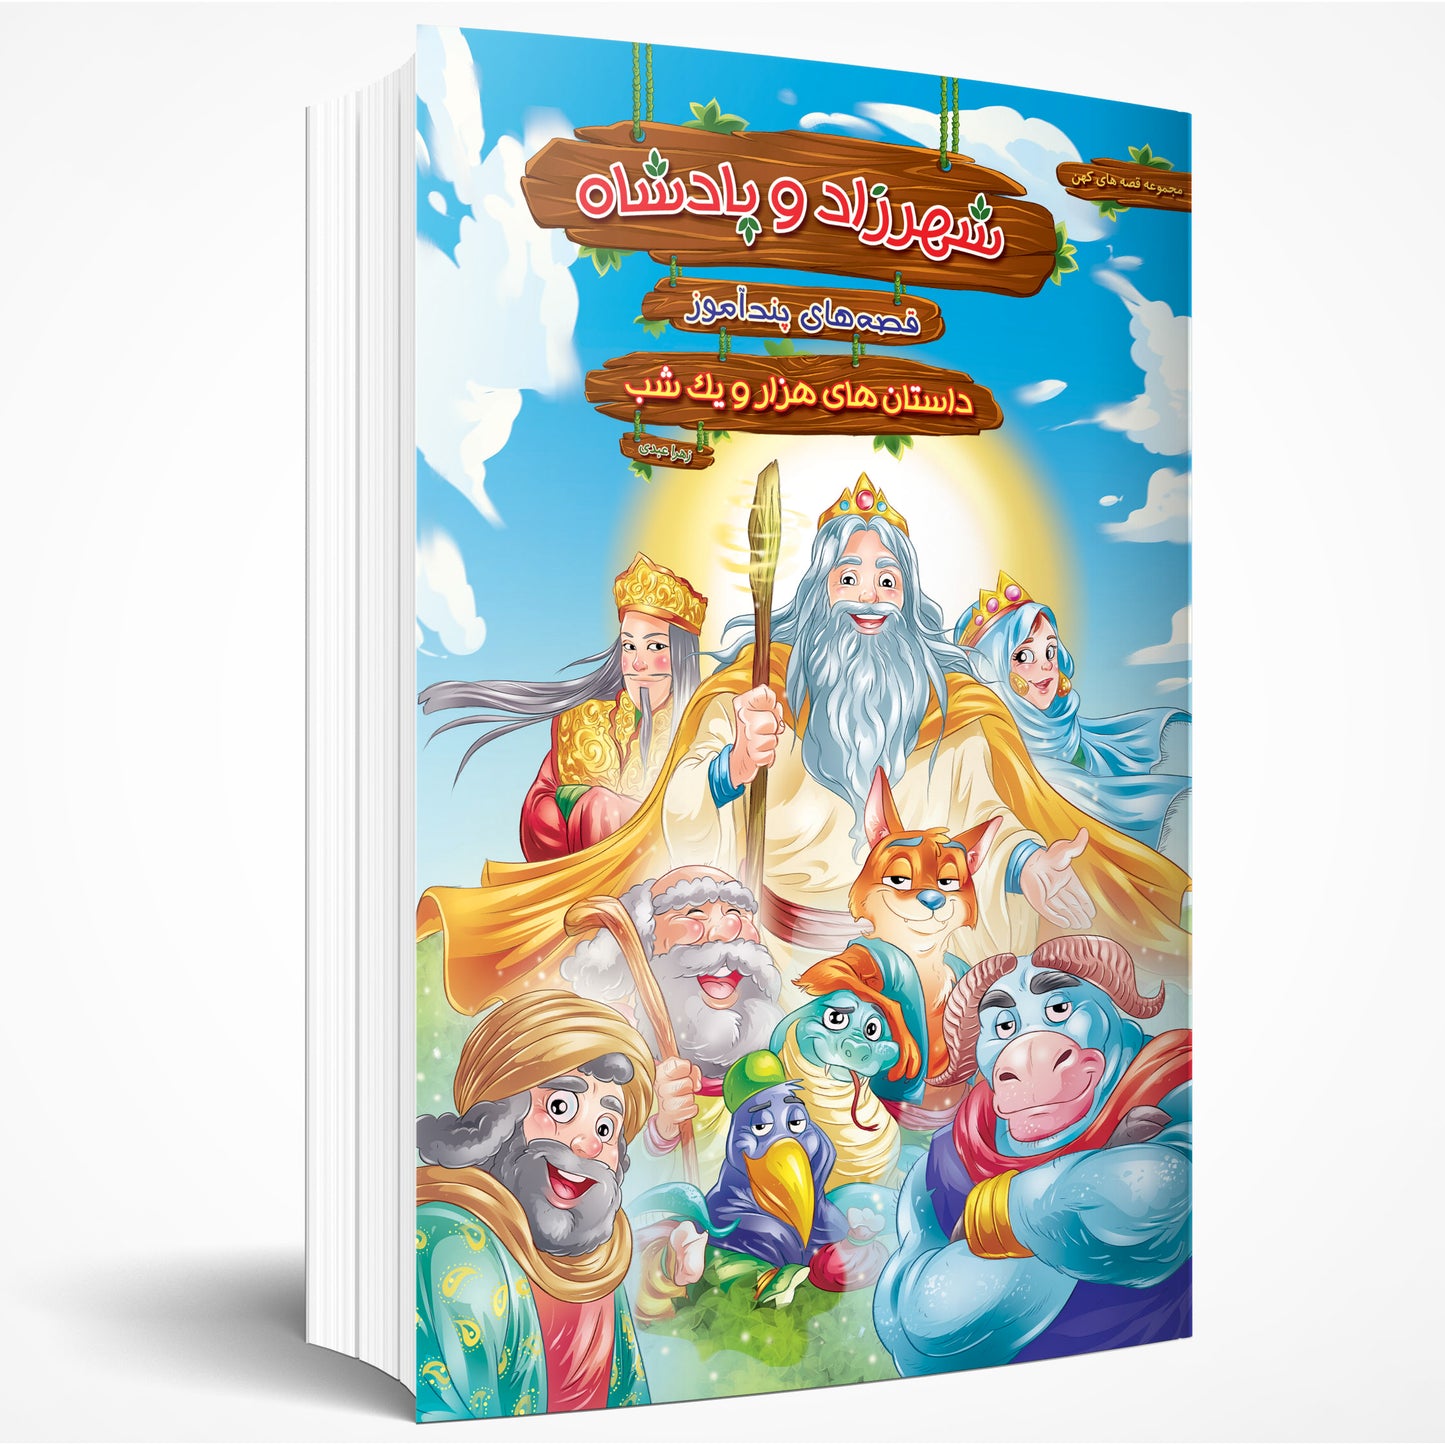 قصه های پند آموز شهرزاد و پادشاه- Stories from One Thousand and One Nights - Shahrzad and The King